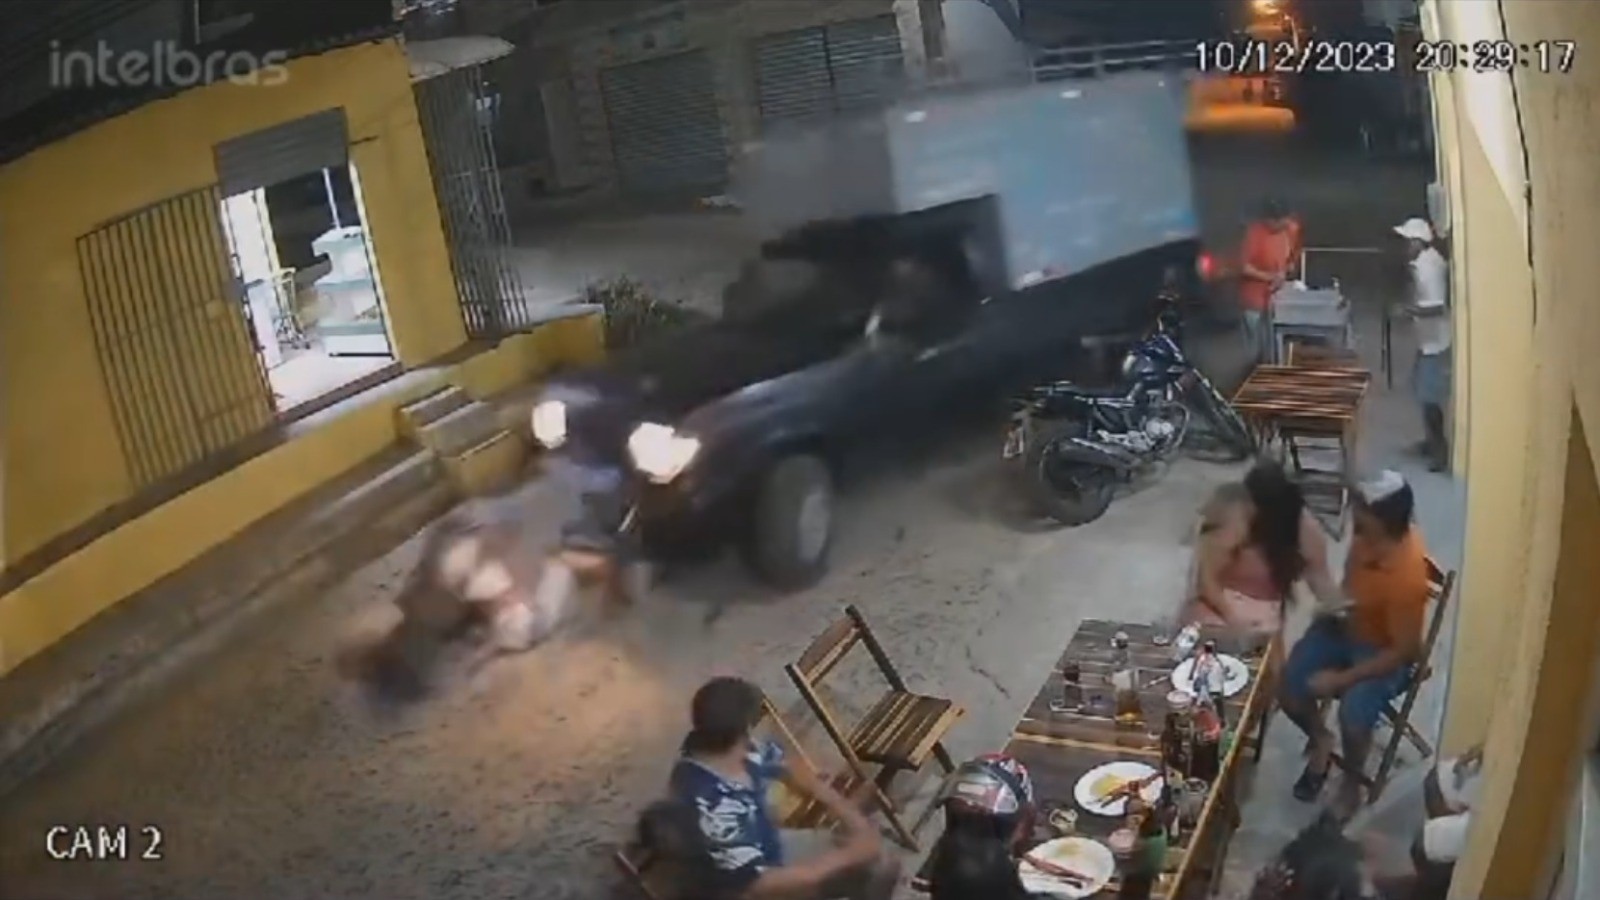 Namorados em moto são atropelados por caminhonete, e motorista foge no Ceará; vídeo